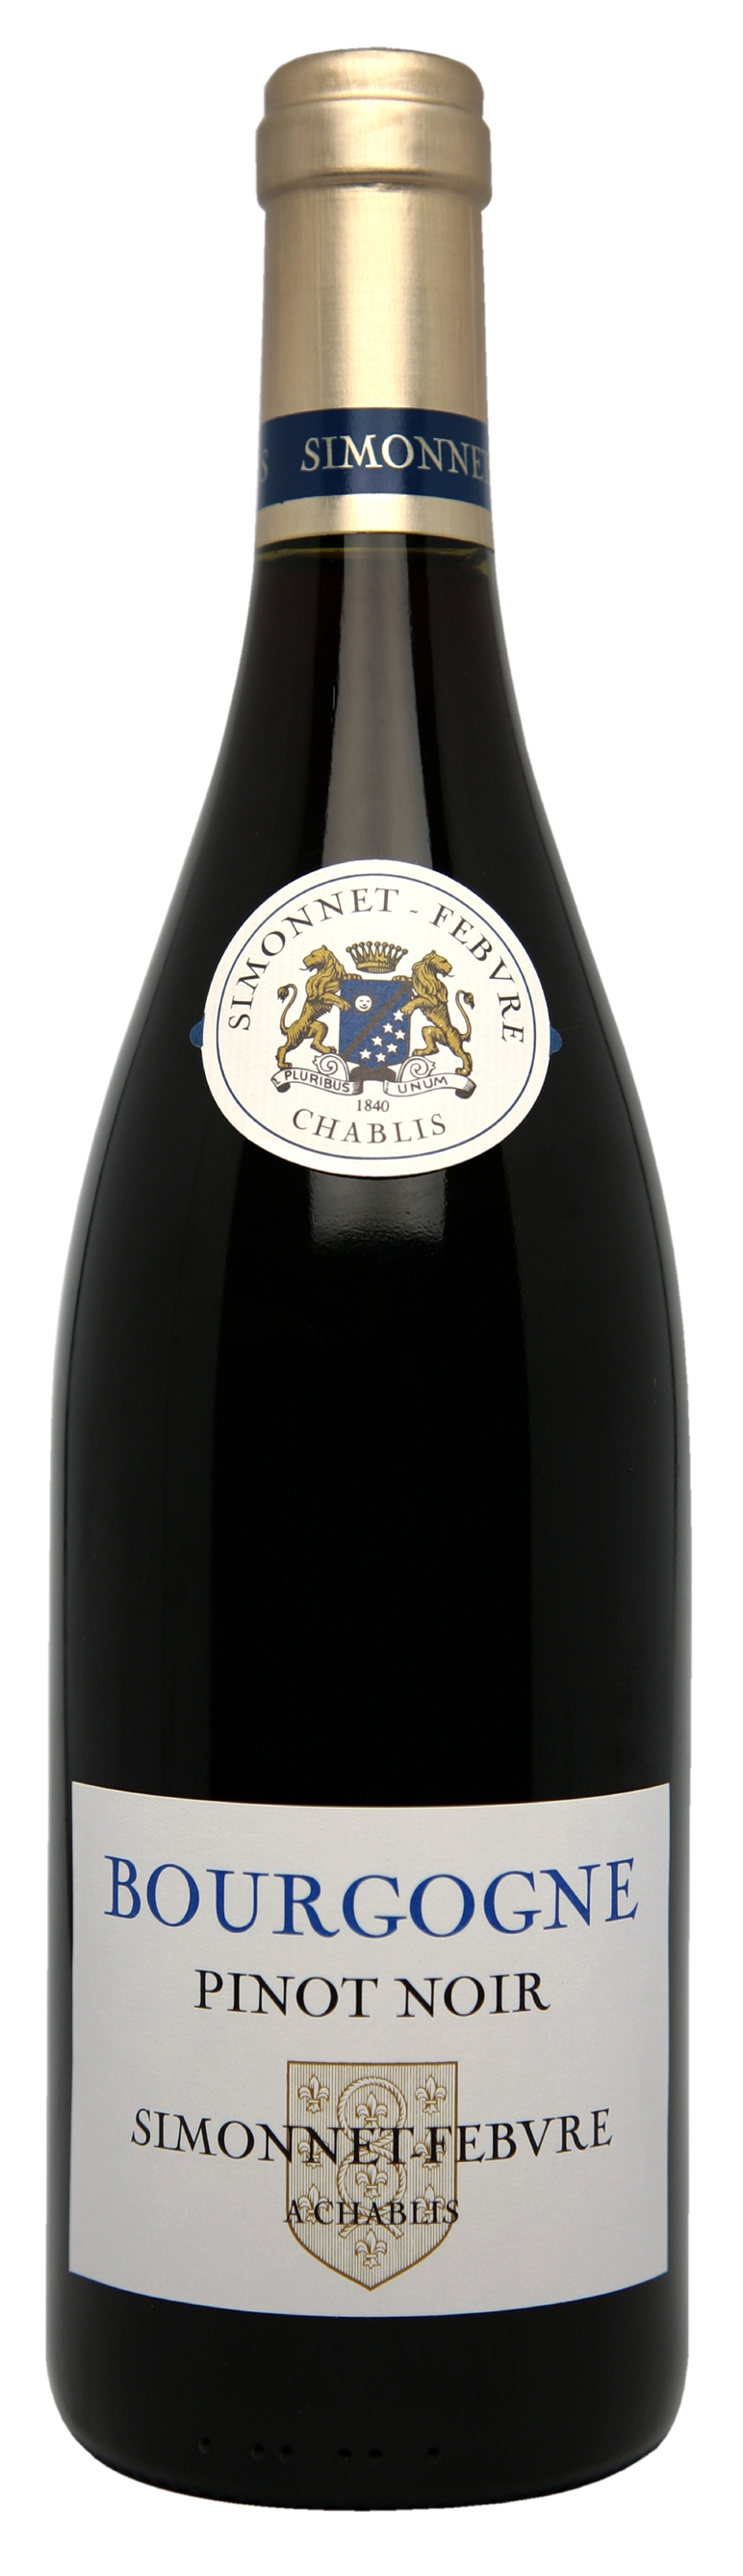 Simonnet-Febvre Bourgogne Pinot Noir 2020